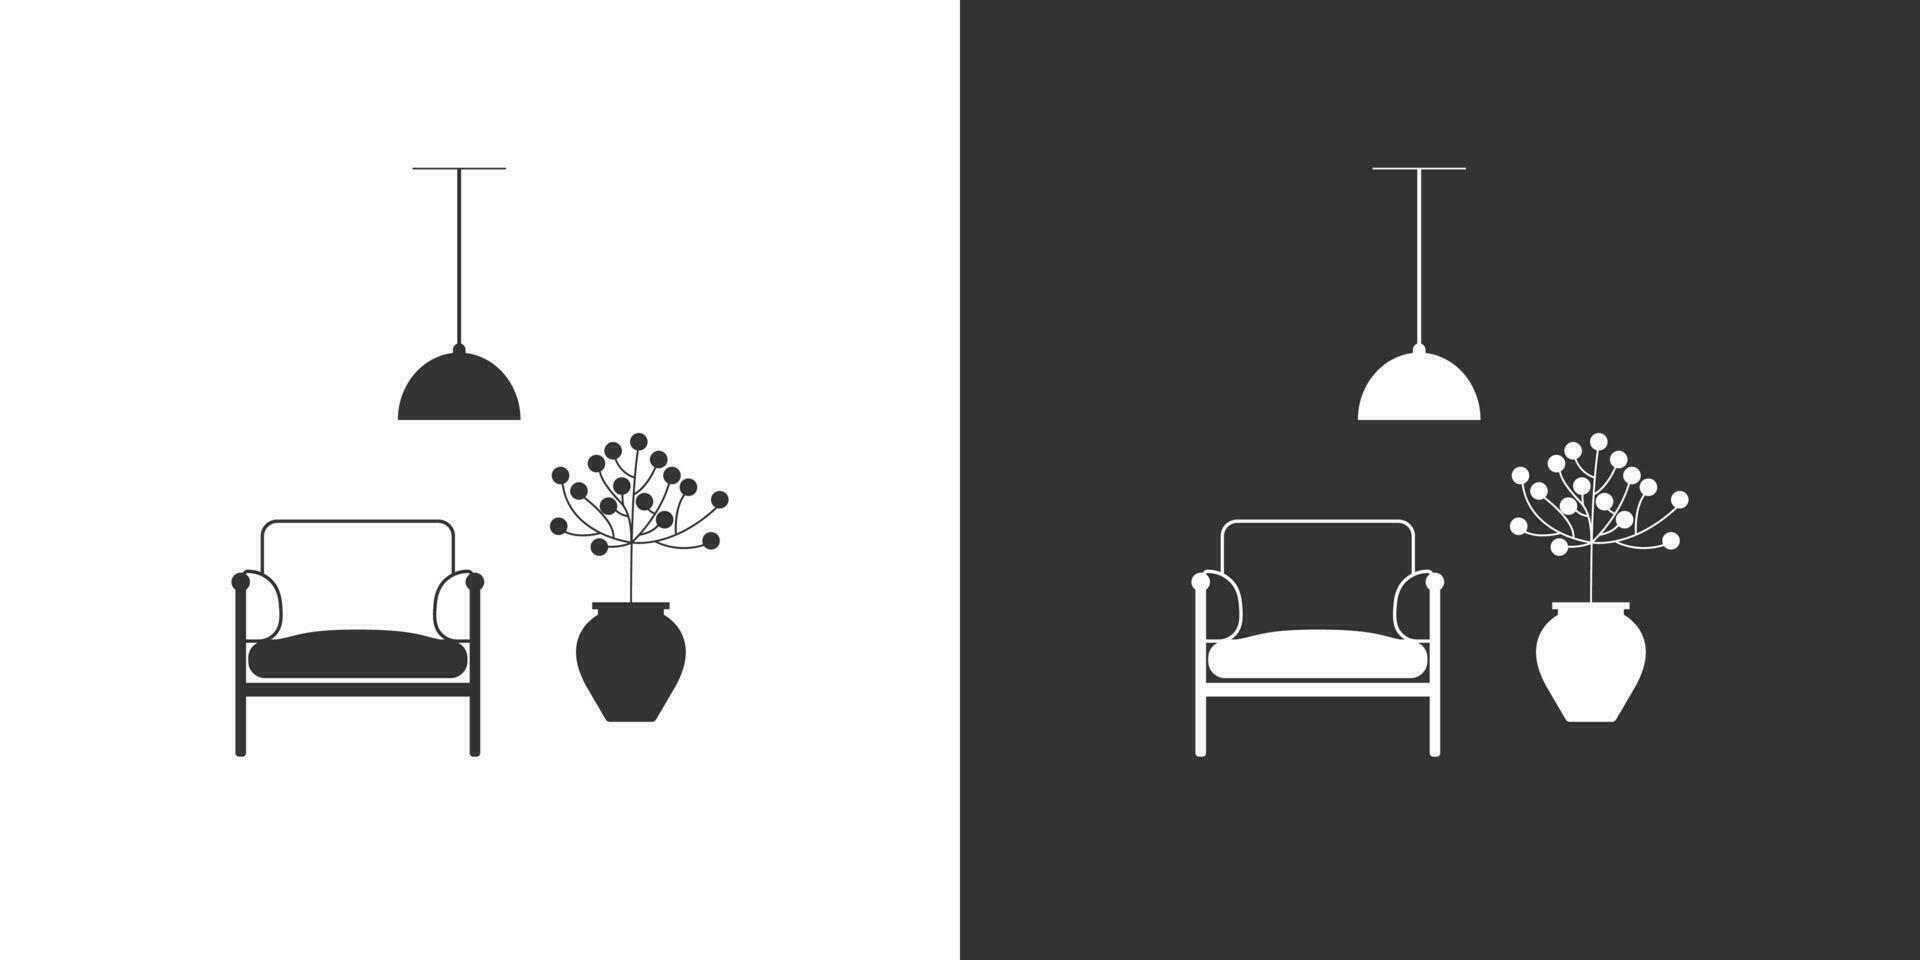 interiör möbel ikon på svart och vit bakgrund. fåtölj, inlagd växt, tak lampa. vektor ikon